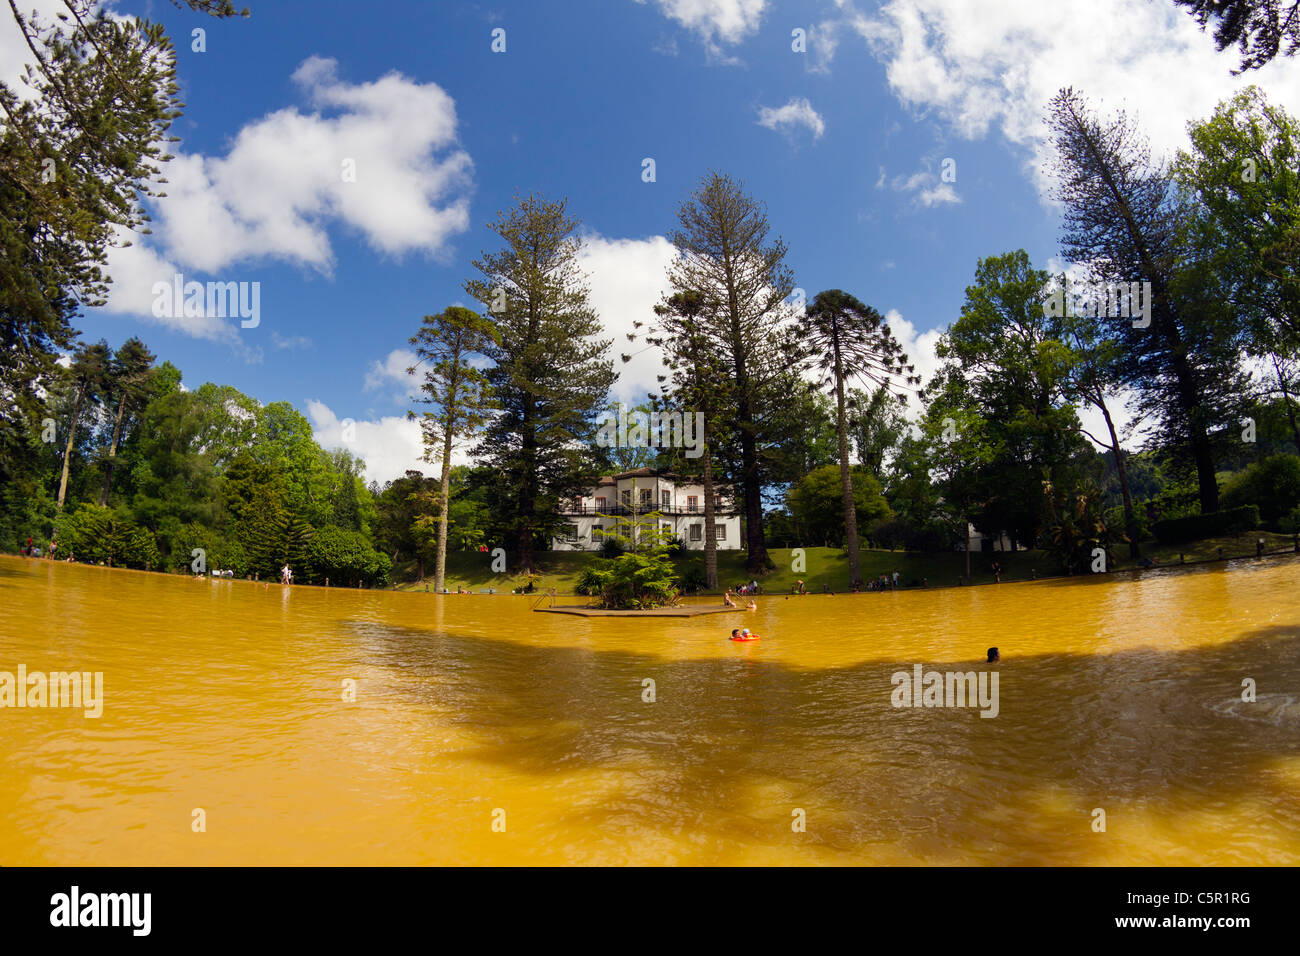 Menschen im goldenen Wasser des ursprünglichen Fountain of Youth, einer heißen Quelle im Park Terra Nostra, Furnas Dorf, Azoren. Stockfoto